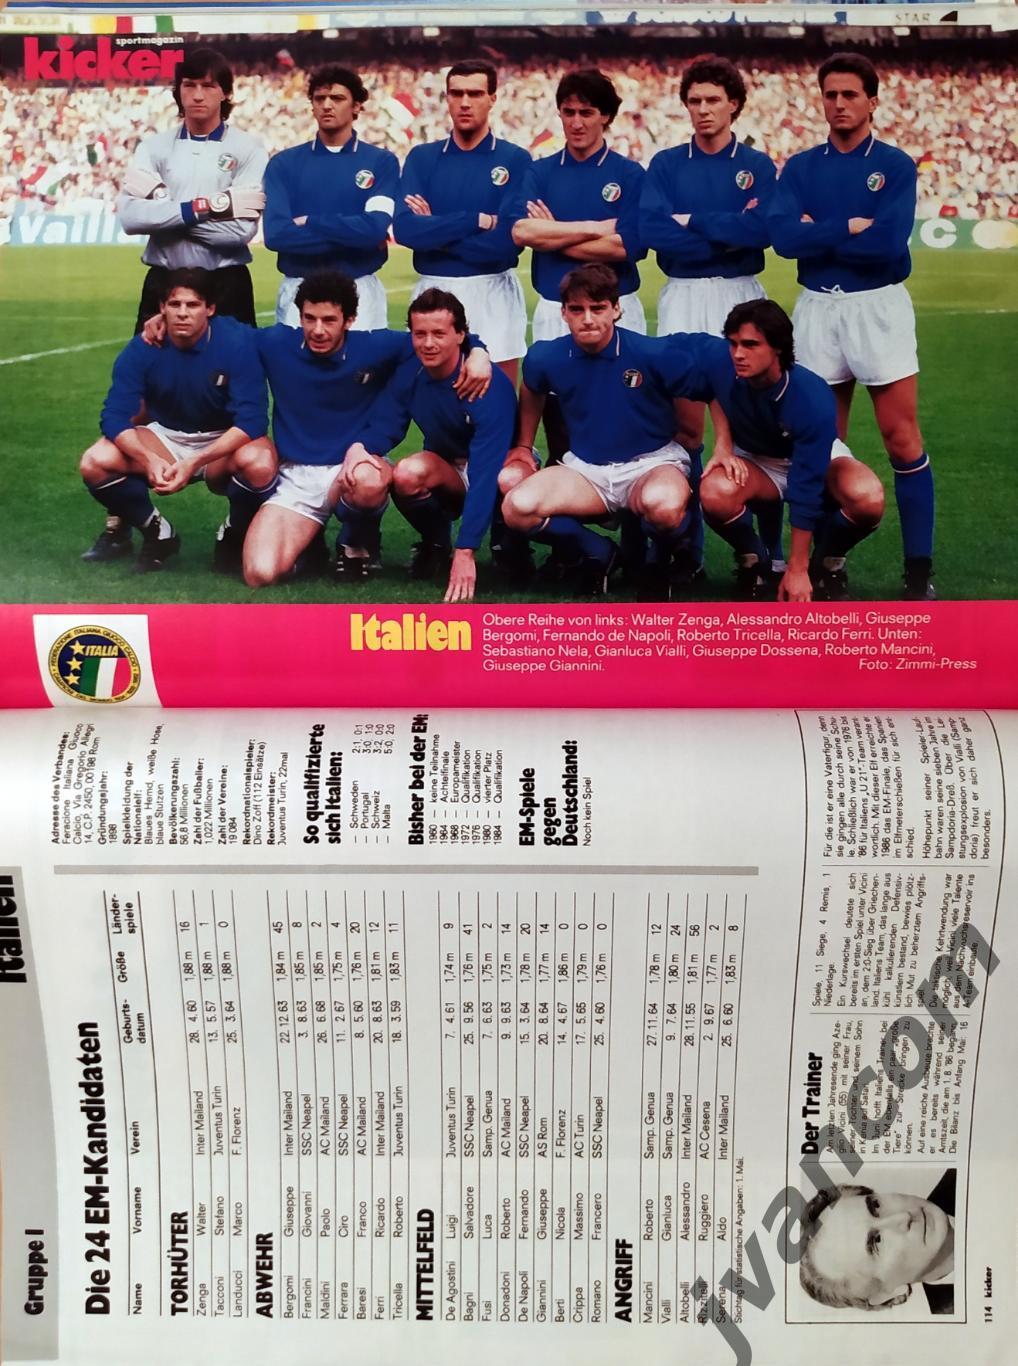 KICKER SONDERHEFT. Чемпионат Европы по футболу 1988 года. Превью участников. 5